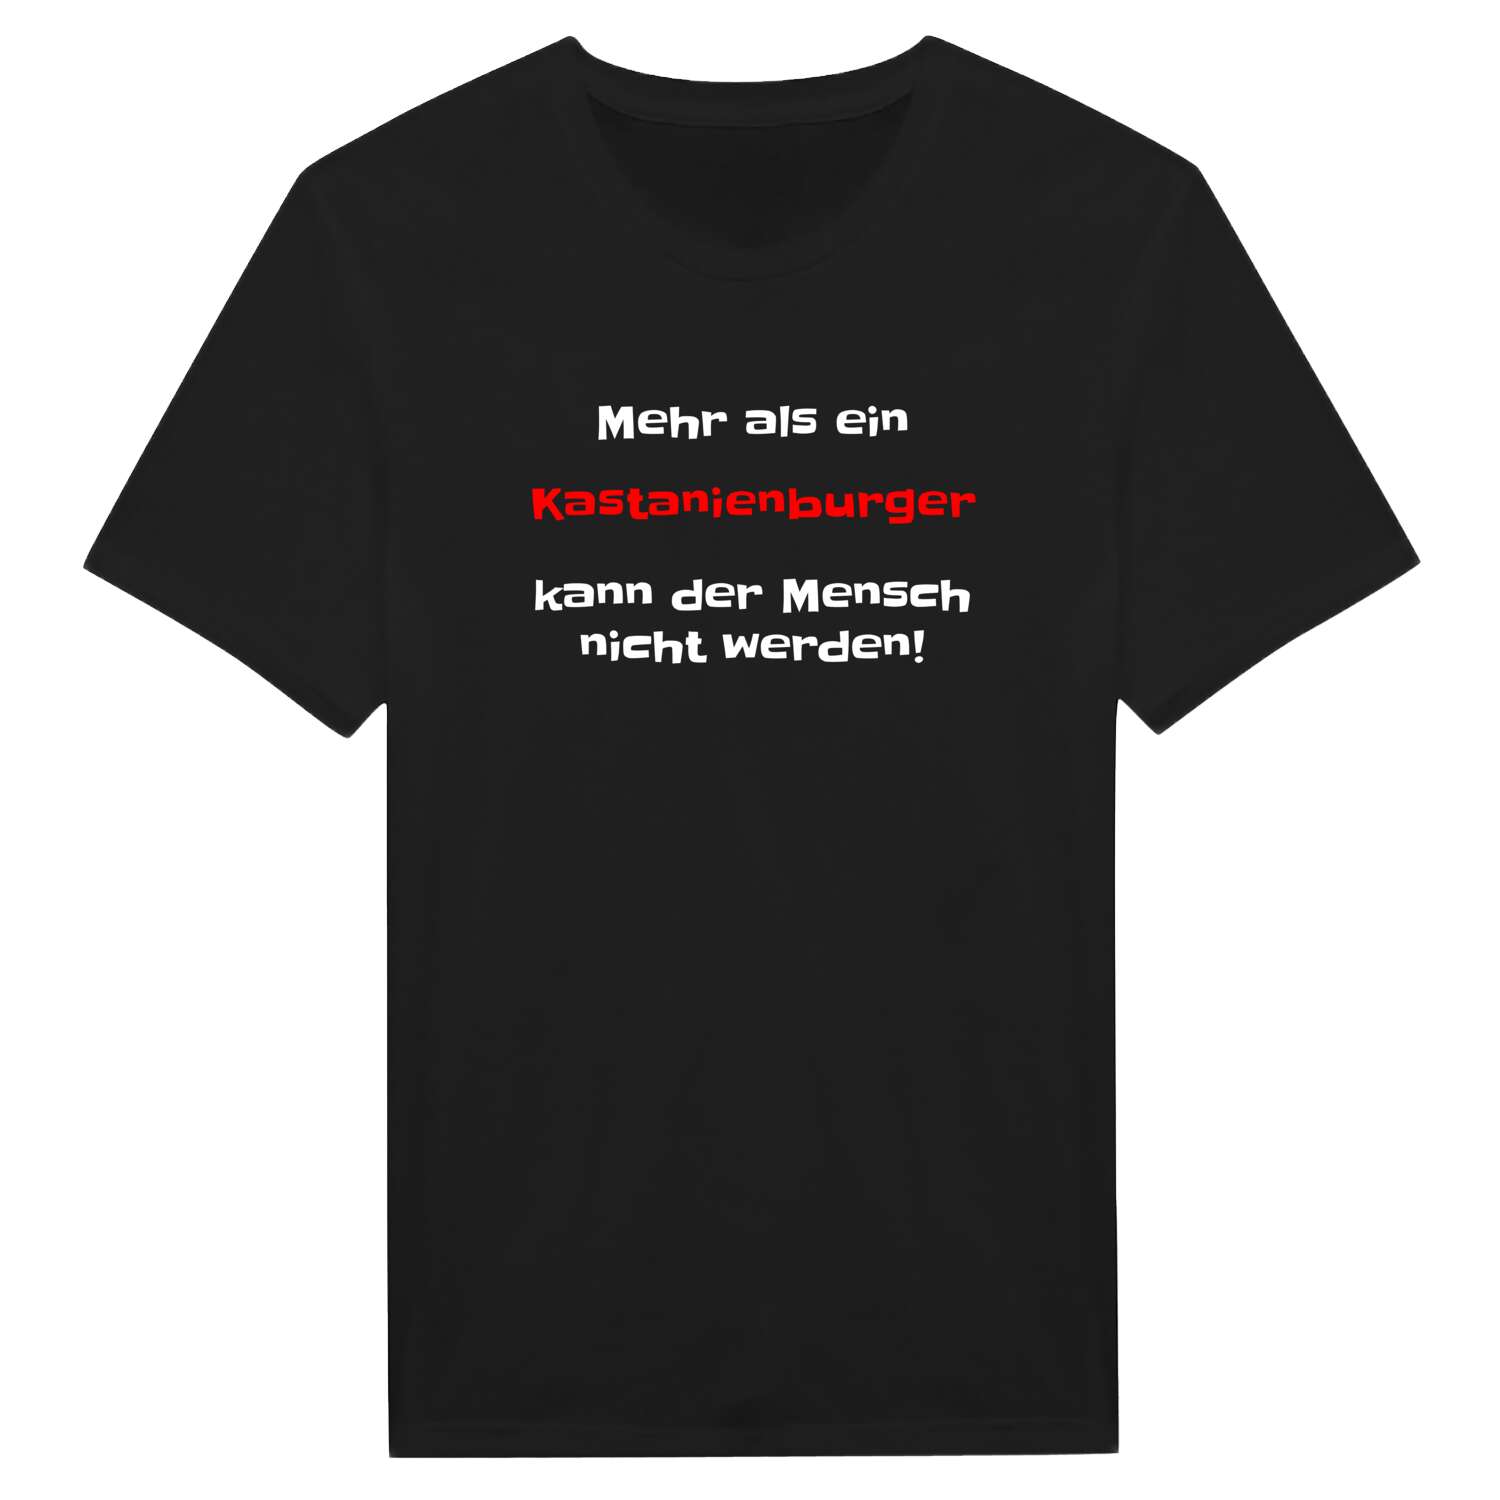 Kastanienburg T-Shirt »Mehr als ein«